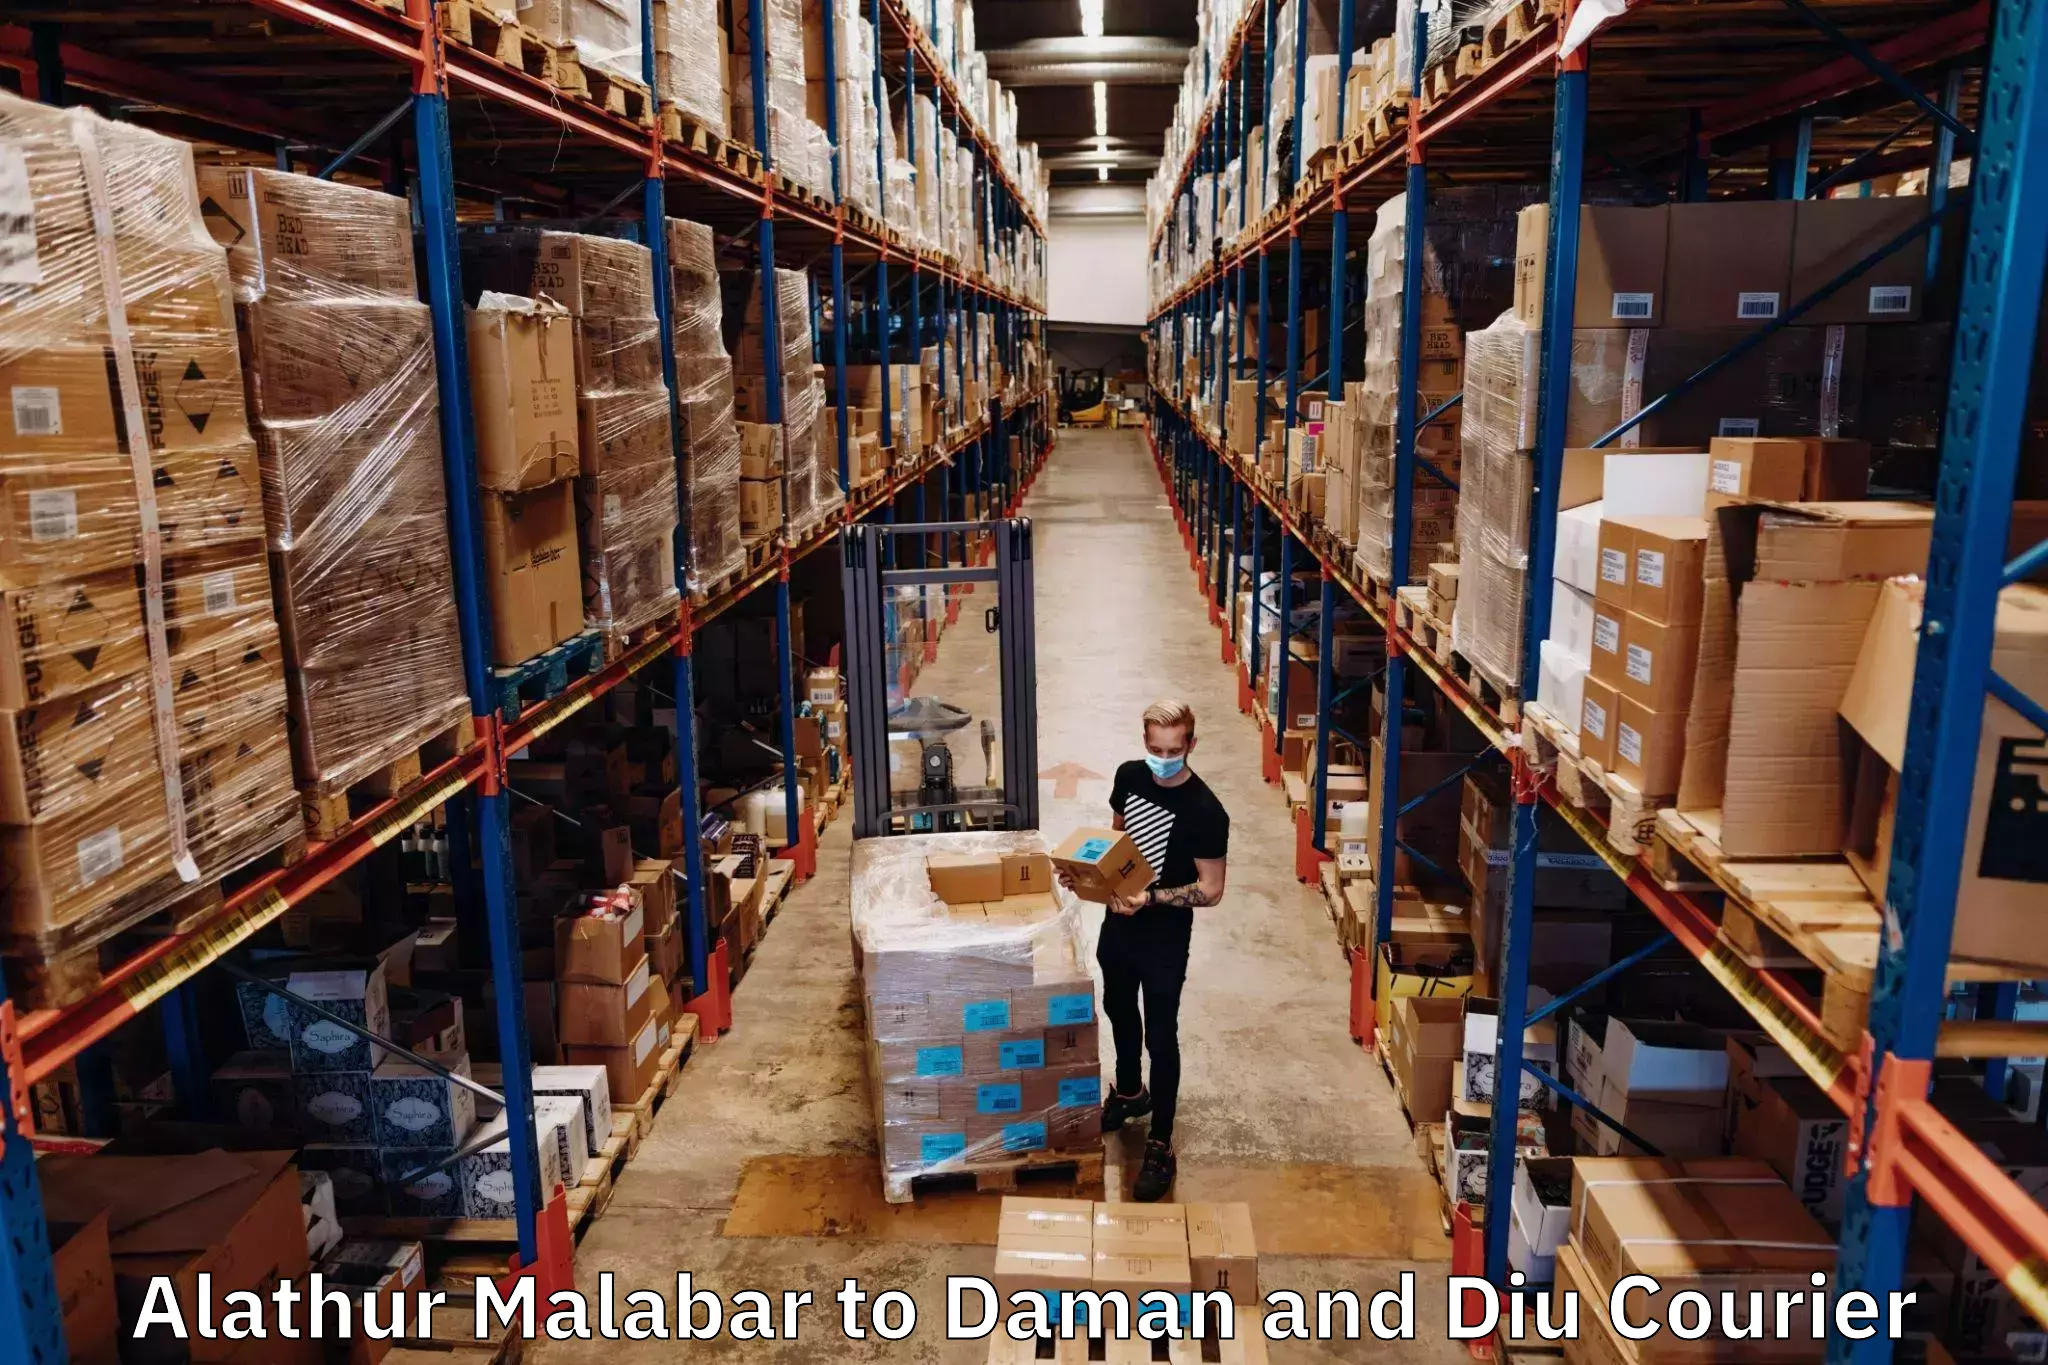 Global freight services Alathur Malabar to Daman and Diu